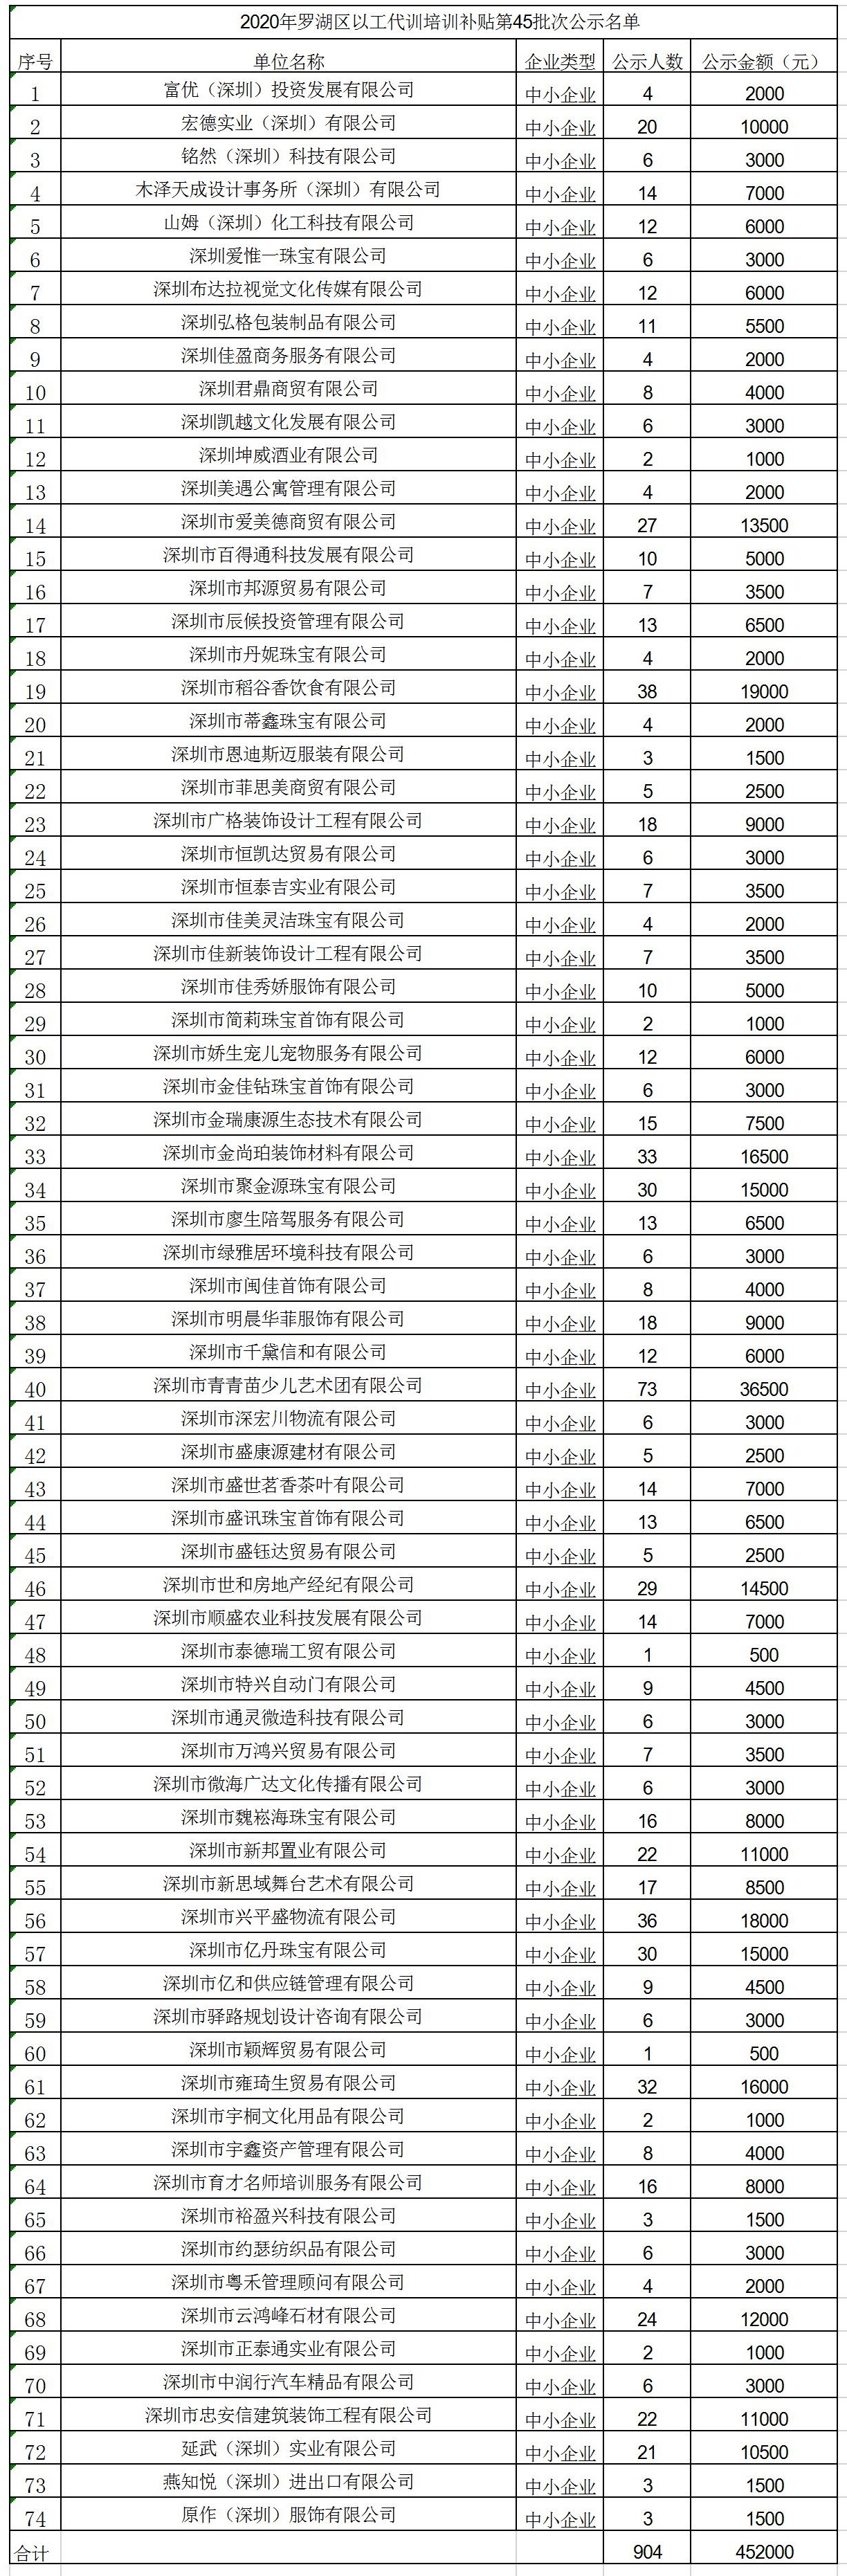 2020年深圳市罗湖区以工代训培训补贴第45批次公示名单.jpg